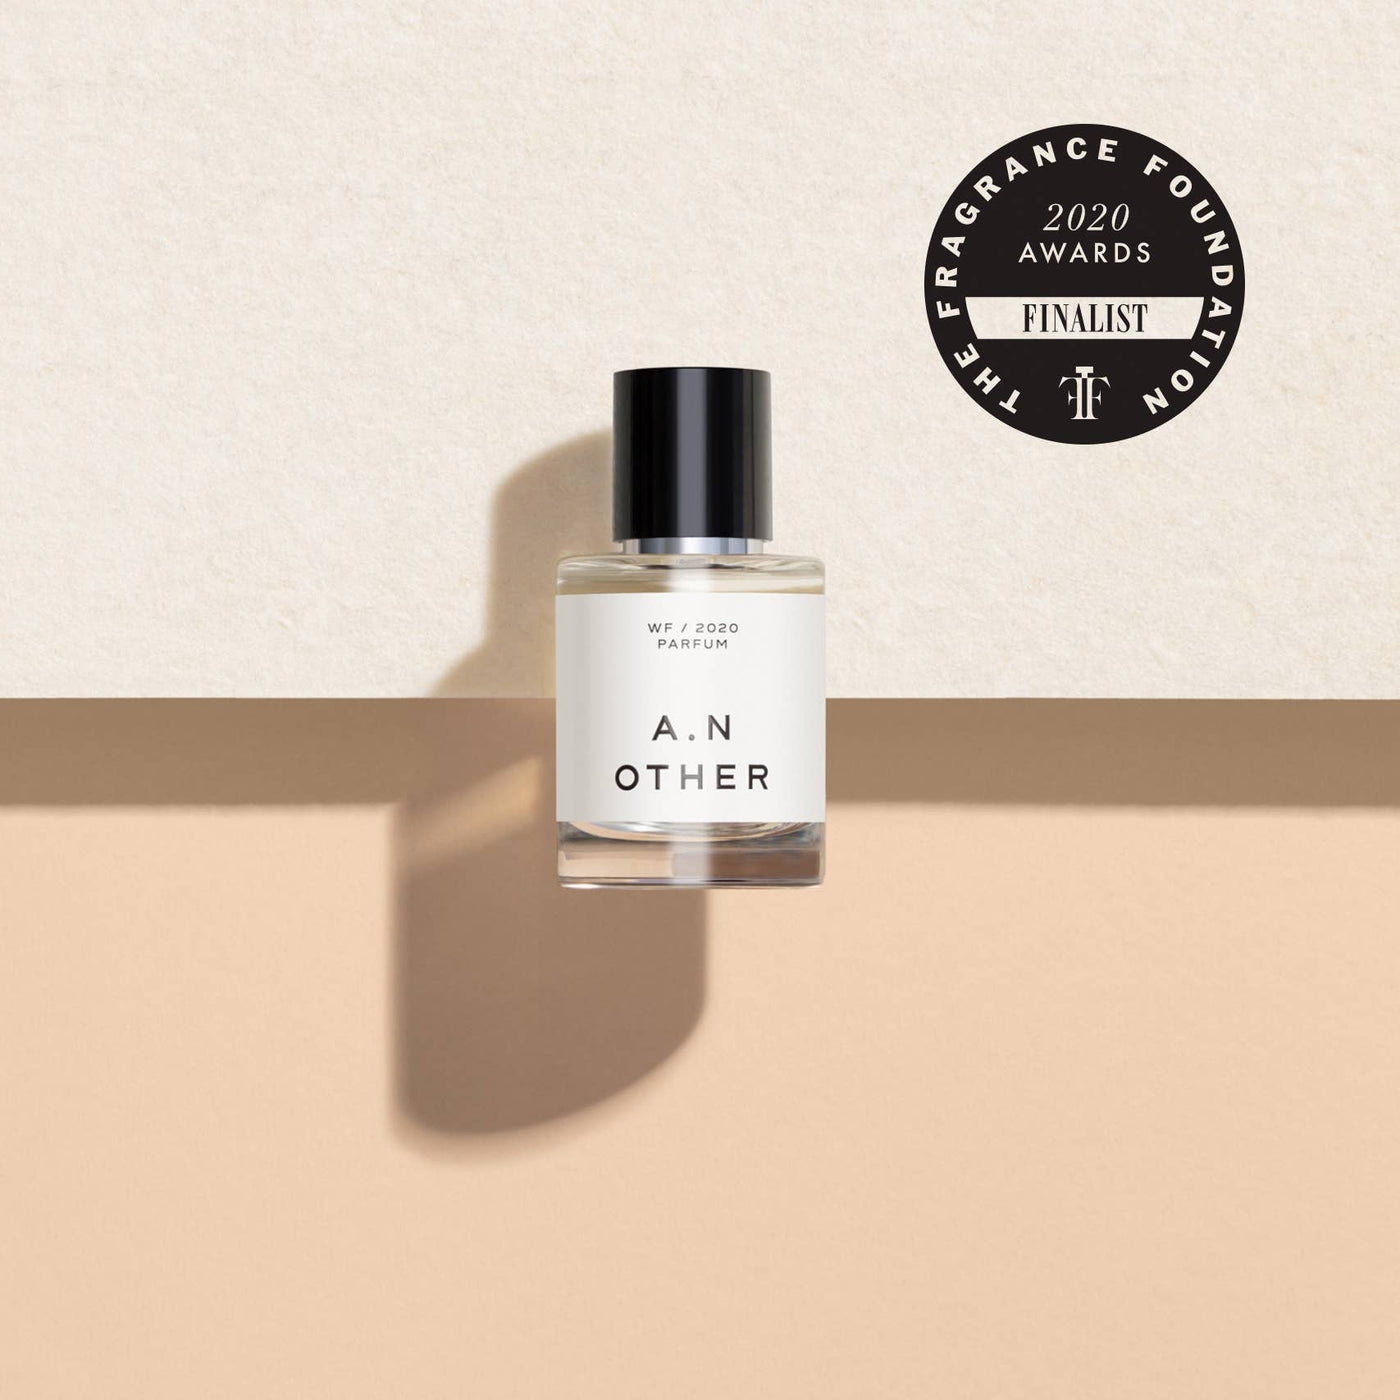 A. N. OTHER - WF/2020 Parfum 50ml